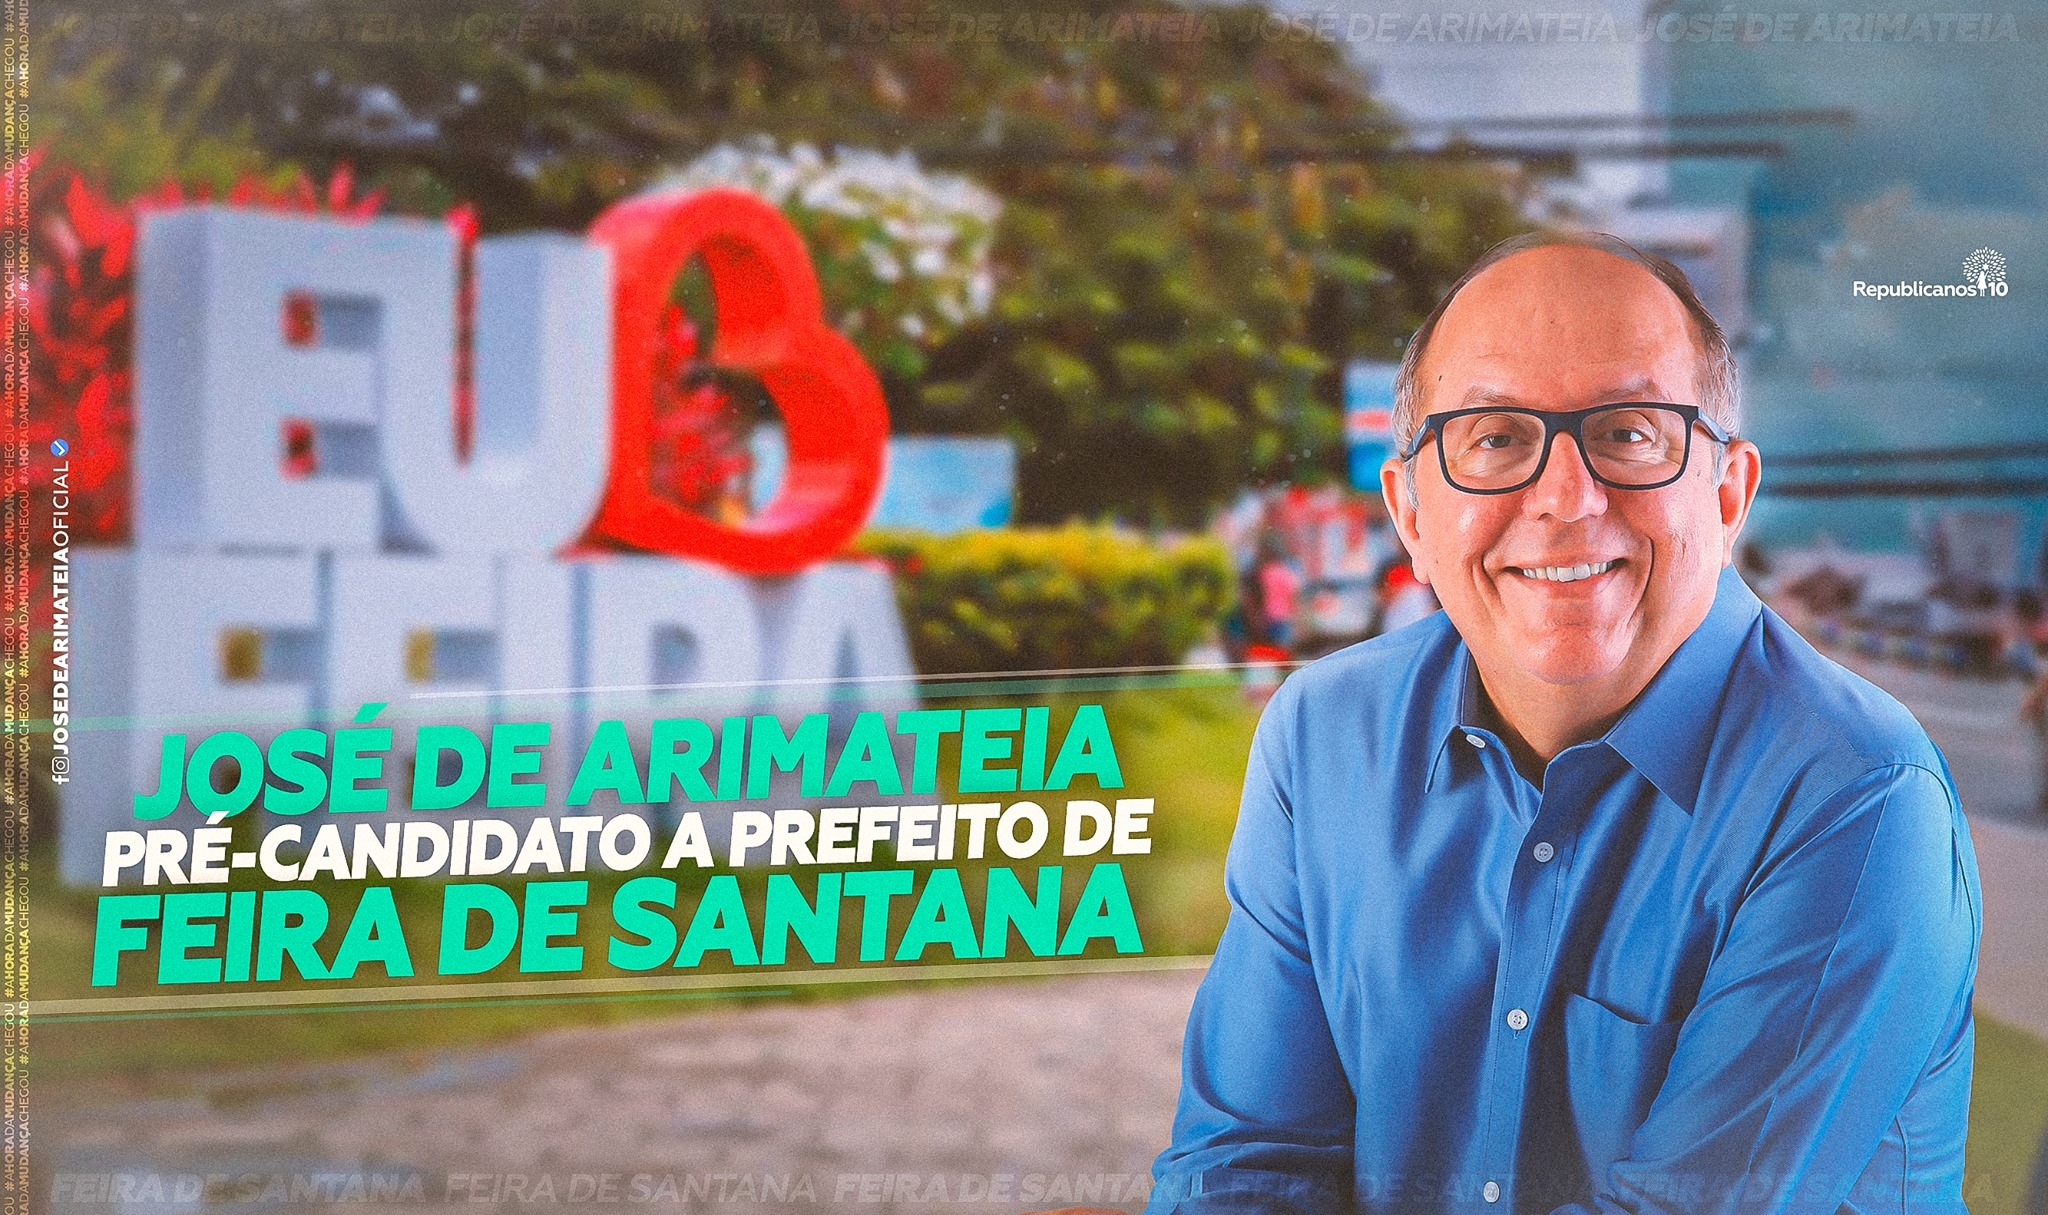 Feira de Santana: José de Arimateia lança pré-candidatura a prefeito em convenção do partido Republicanos no dia 10